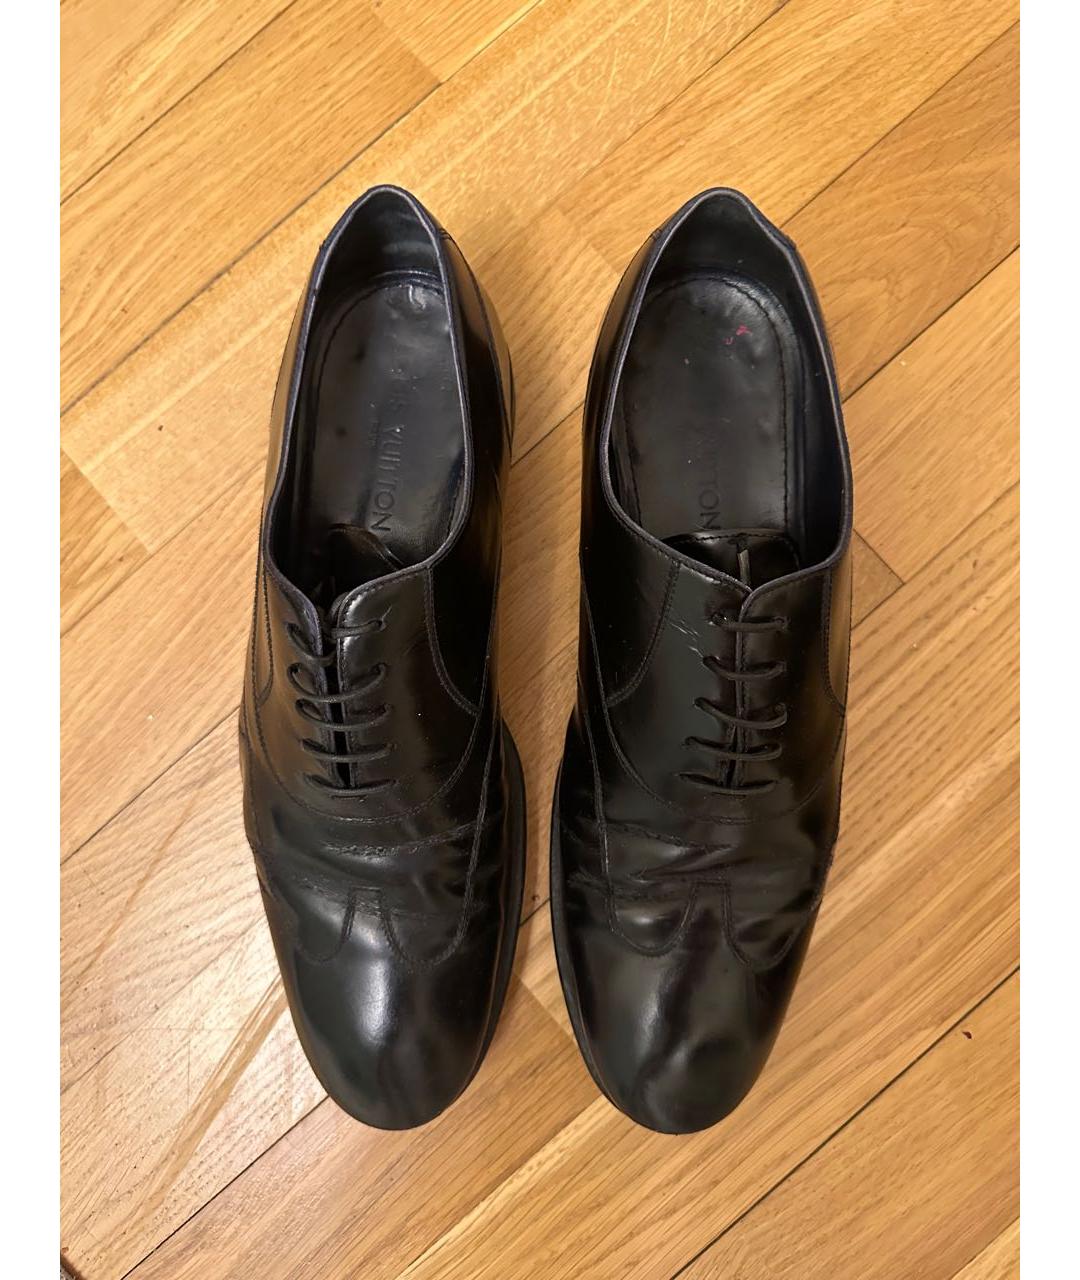 LOUIS VUITTON PRE-OWNED Черные кожаные низкие ботинки, фото 3